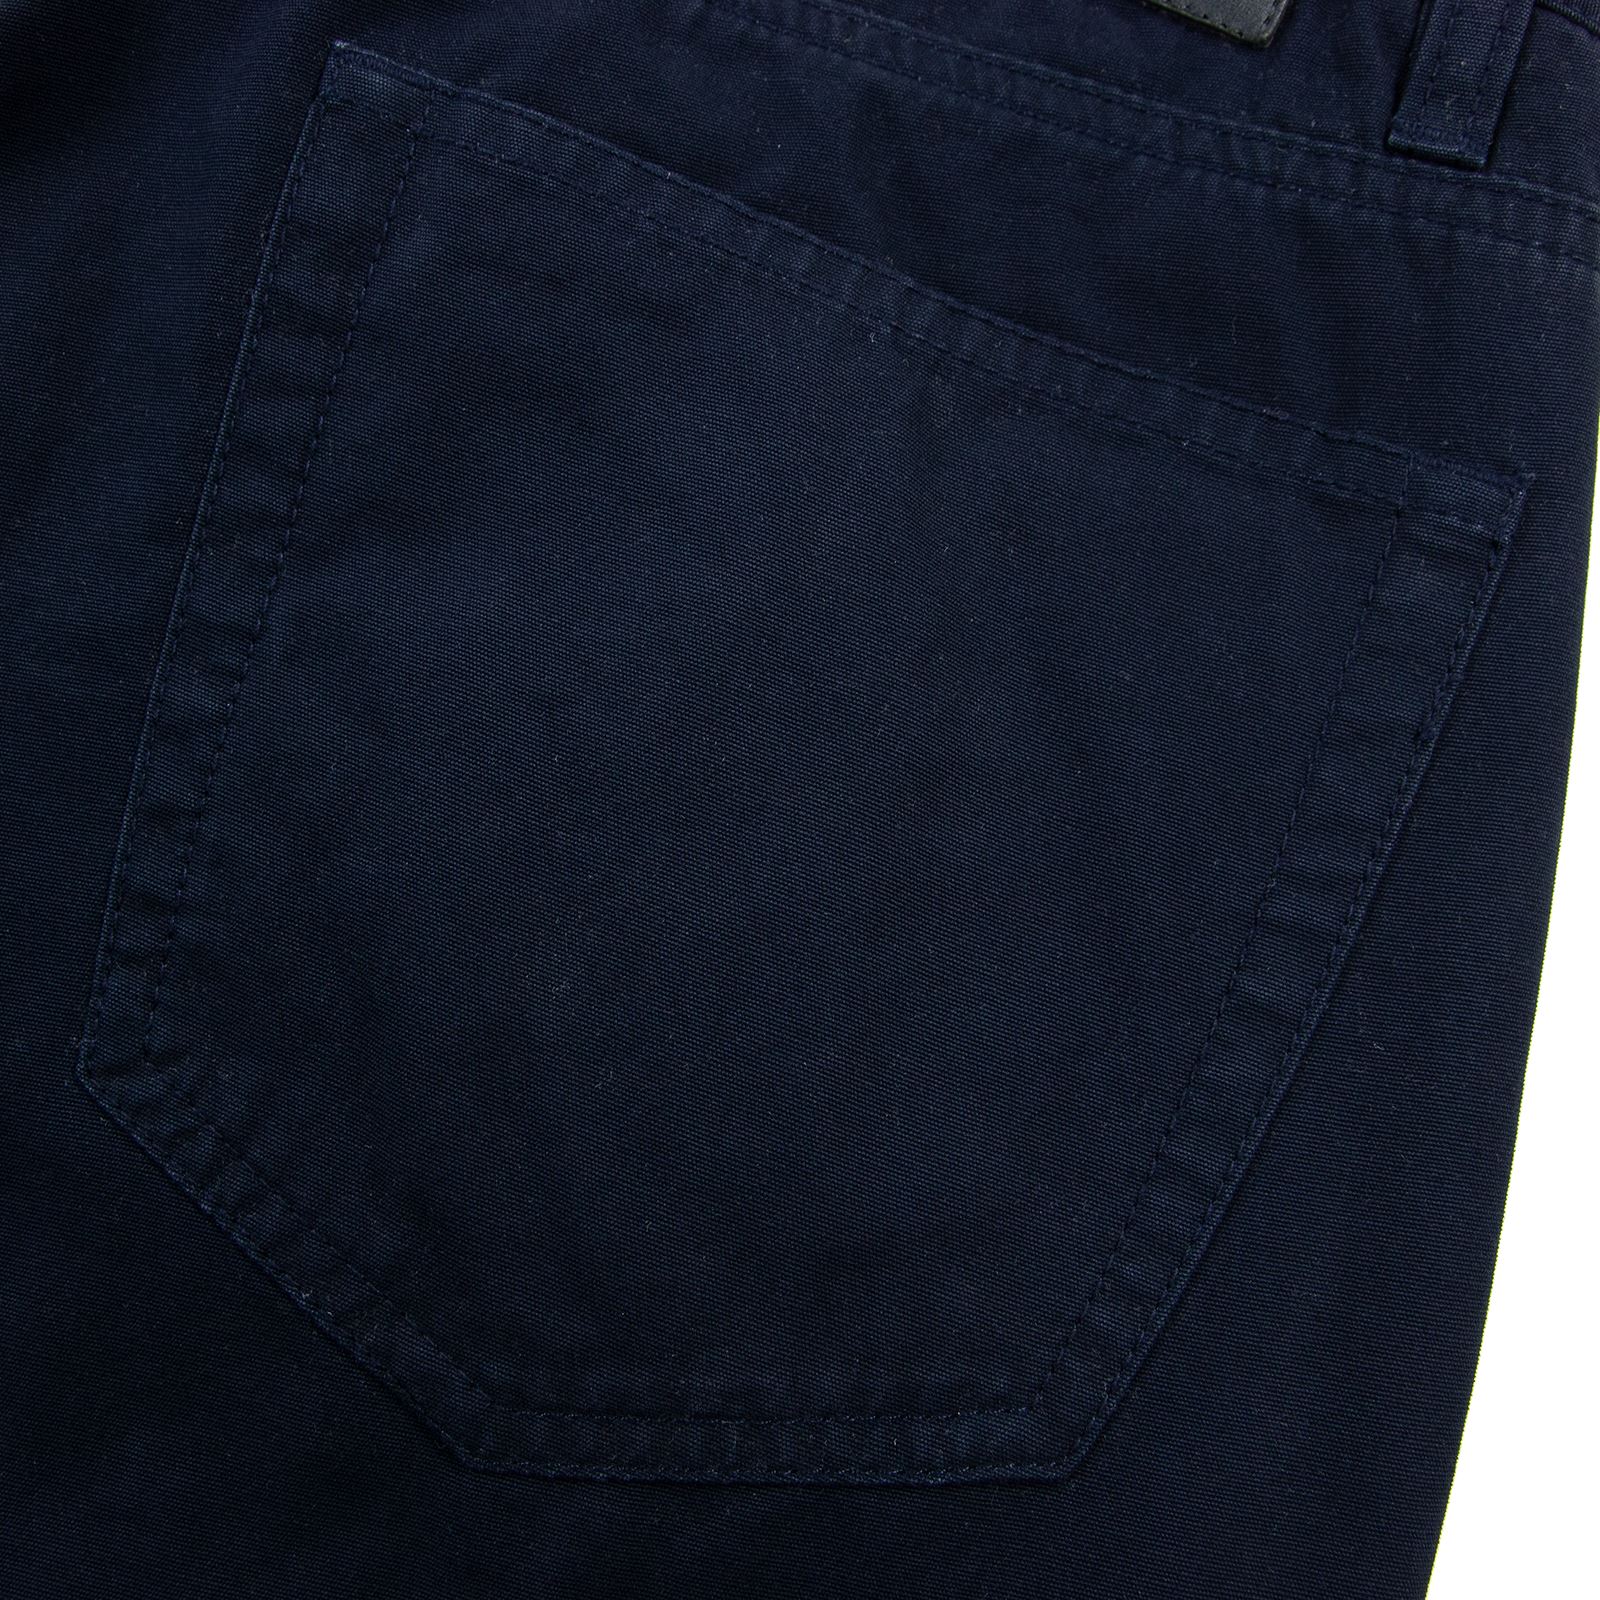 Download Bonobos Indigo Blue Cotton Pique Leather Jacron Slim Fit ...